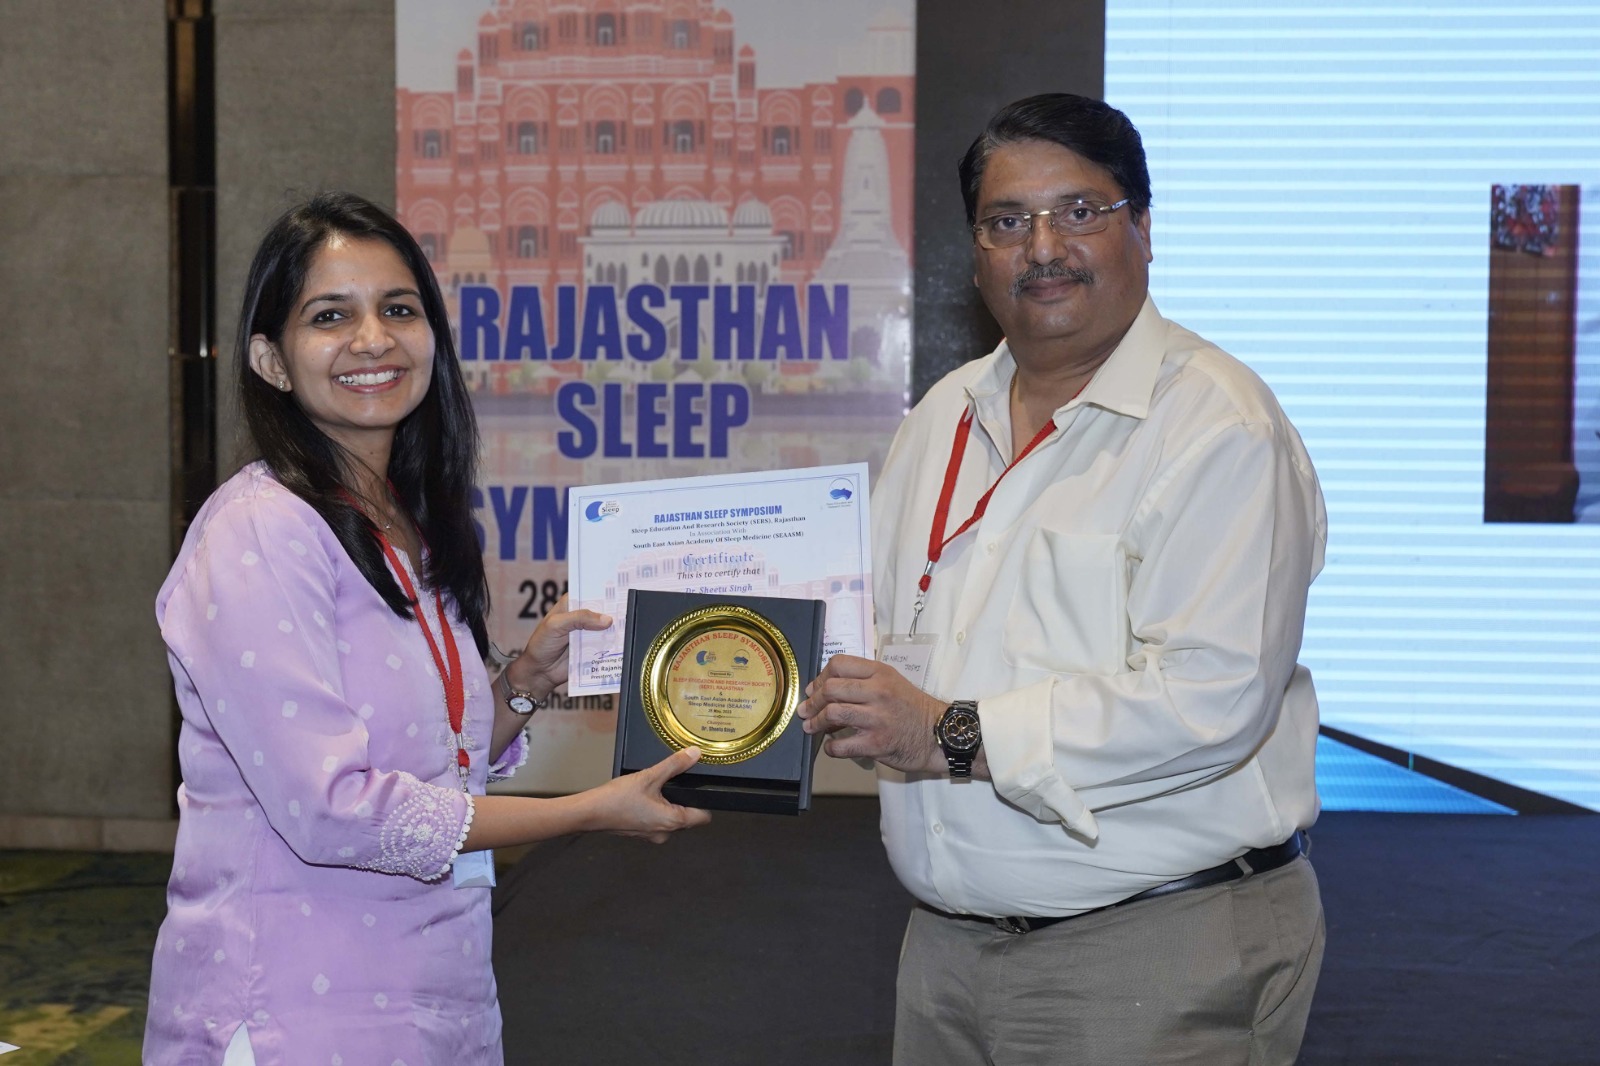 Rajasthan Sleep Symposium 2023